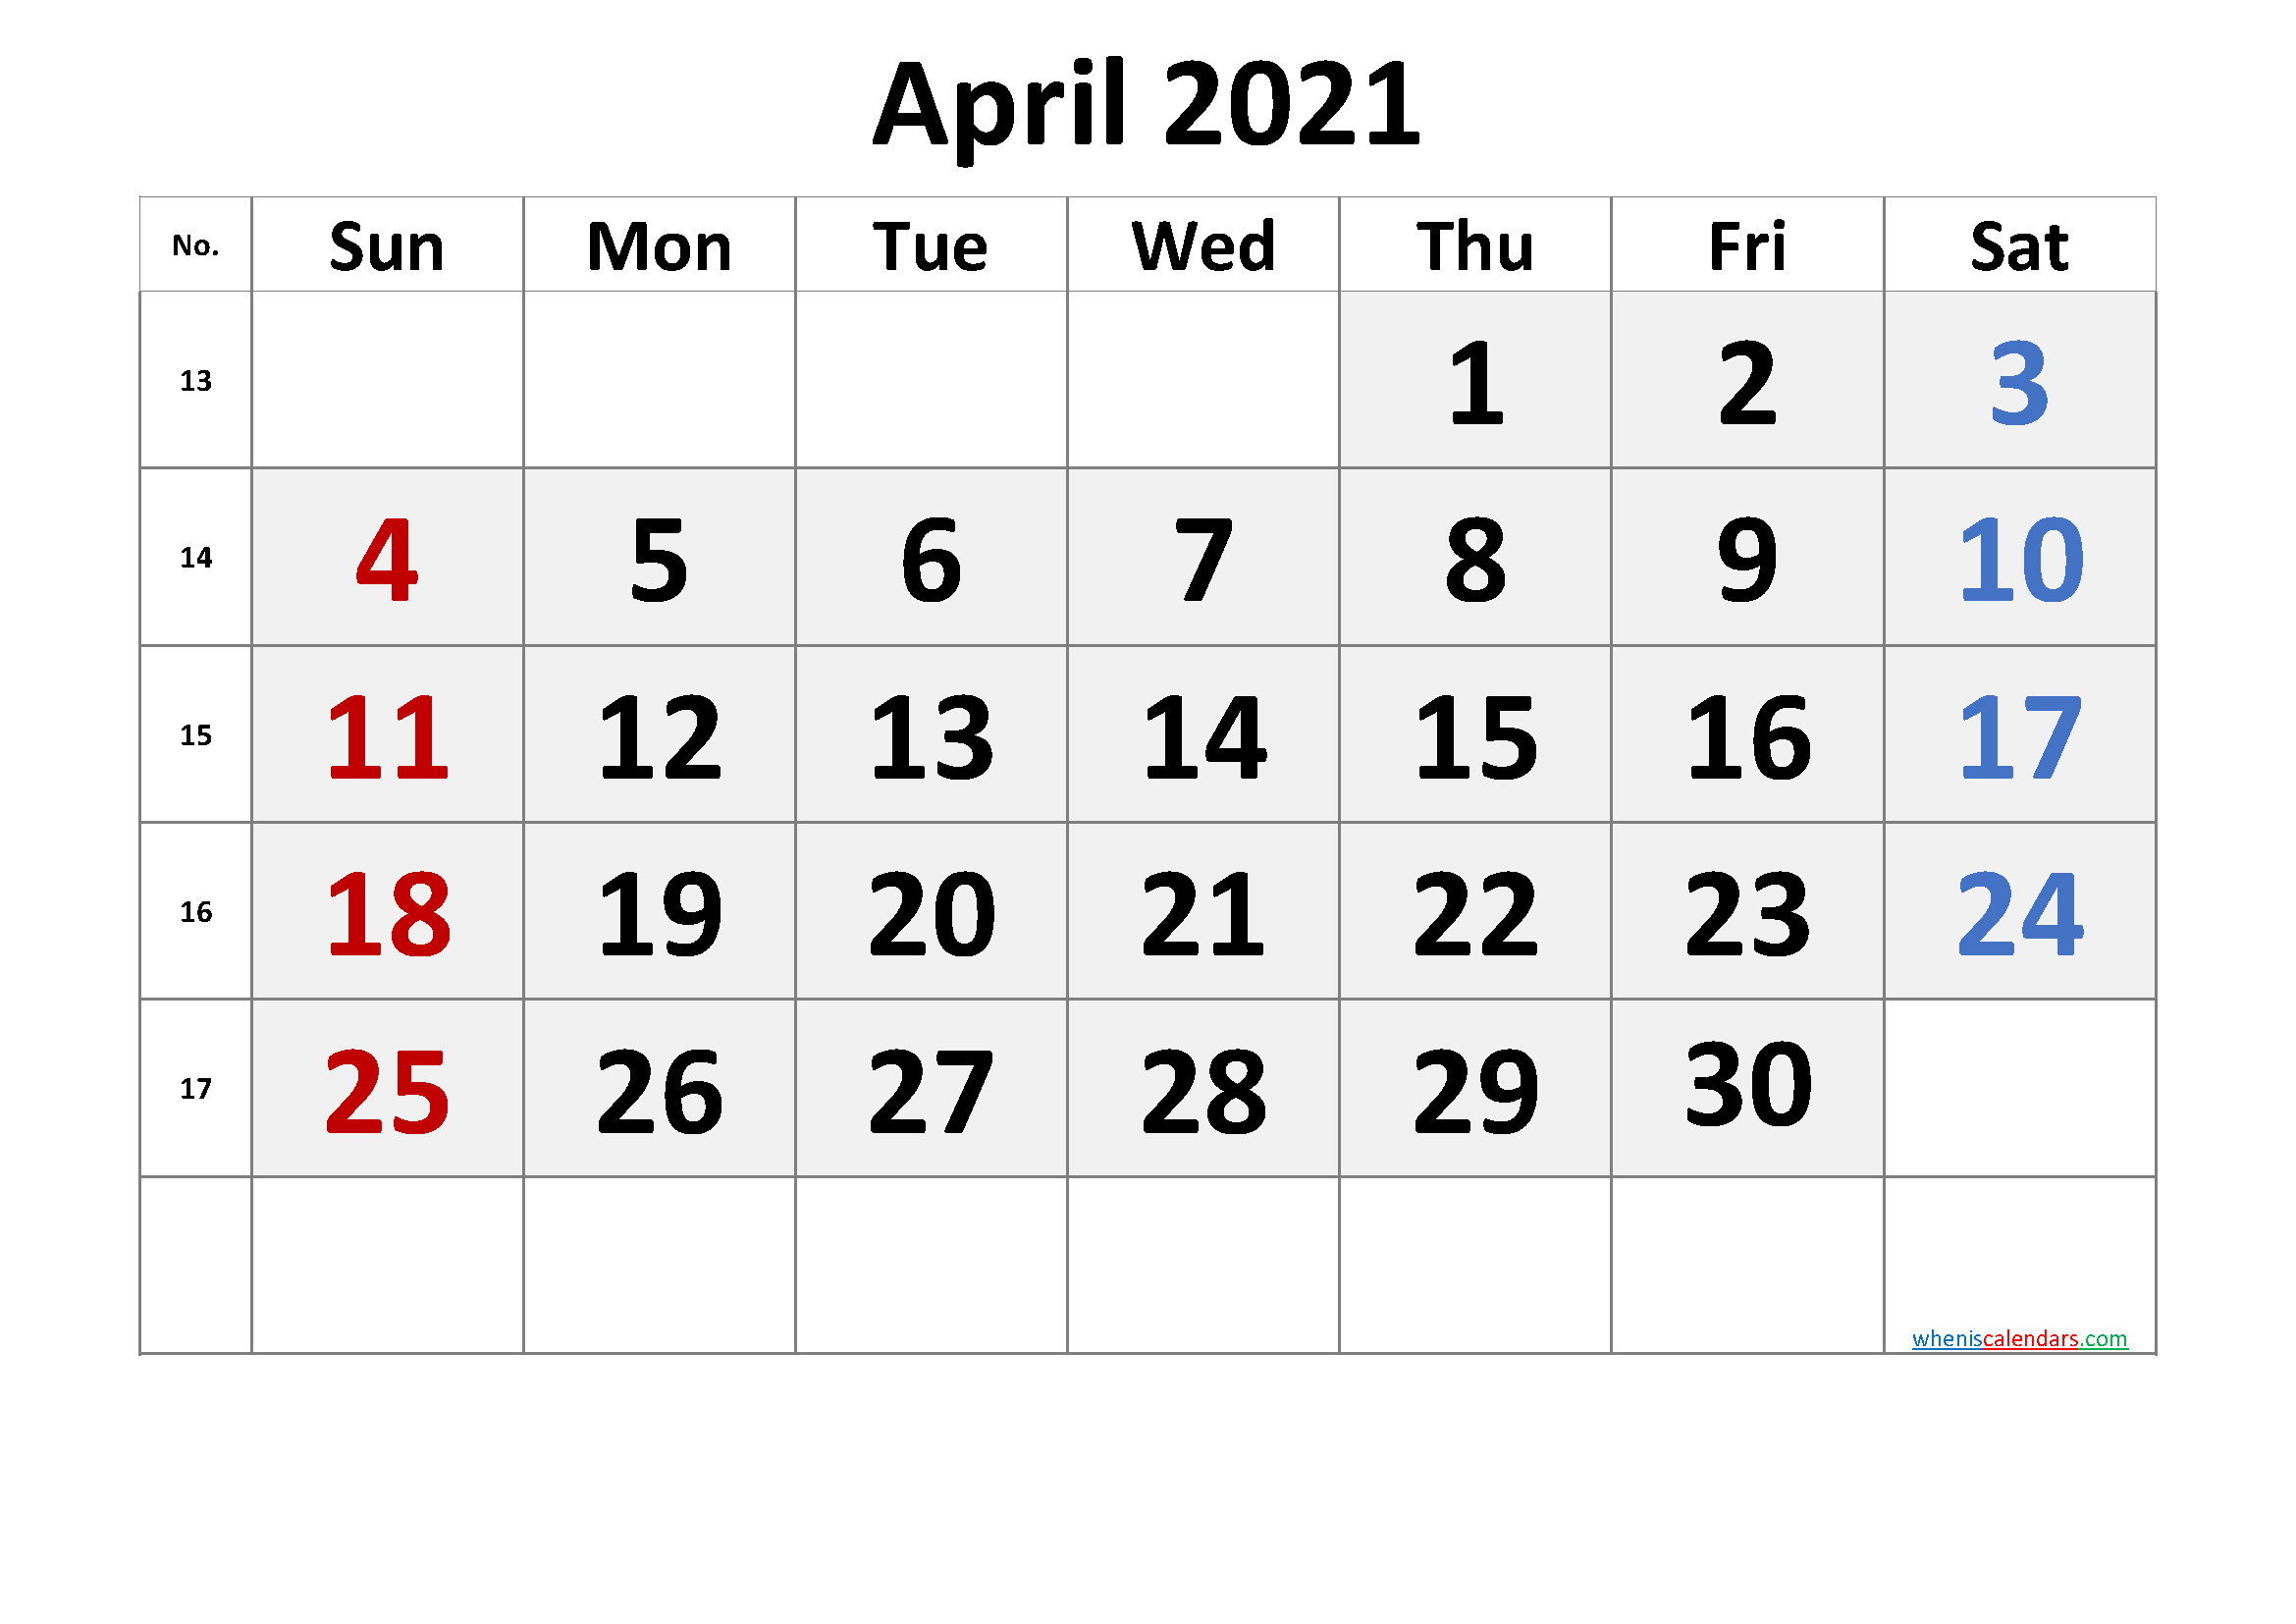 2021 Calendar With Week Number Printable Free : Week